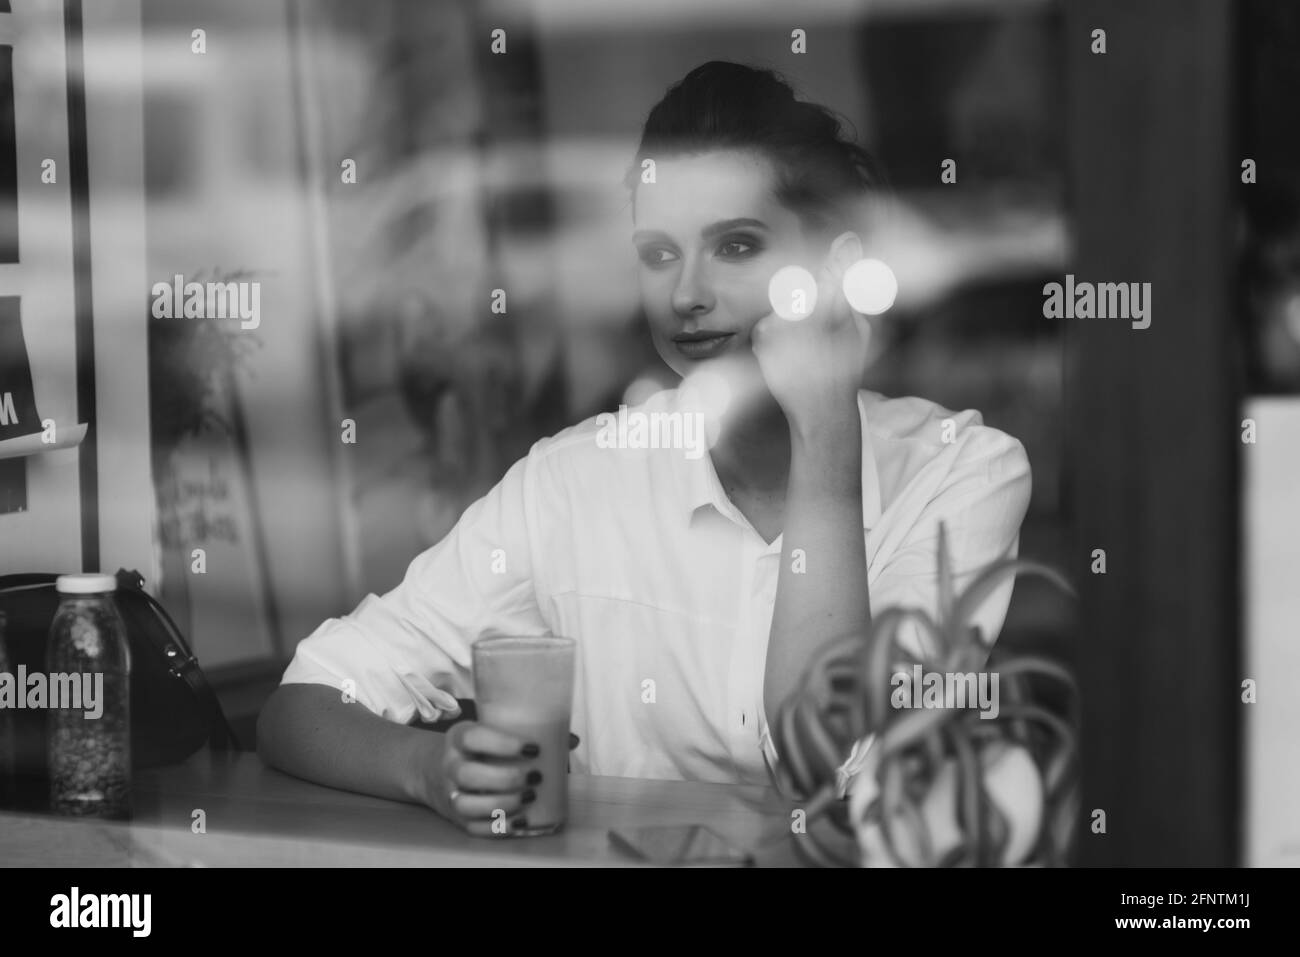 Une belle jeune fille est assise dans un café derrière un verre avec une tasse de café et regarde soigneusement par la fenêtre. Photo d'art noir et blanc via gla Banque D'Images